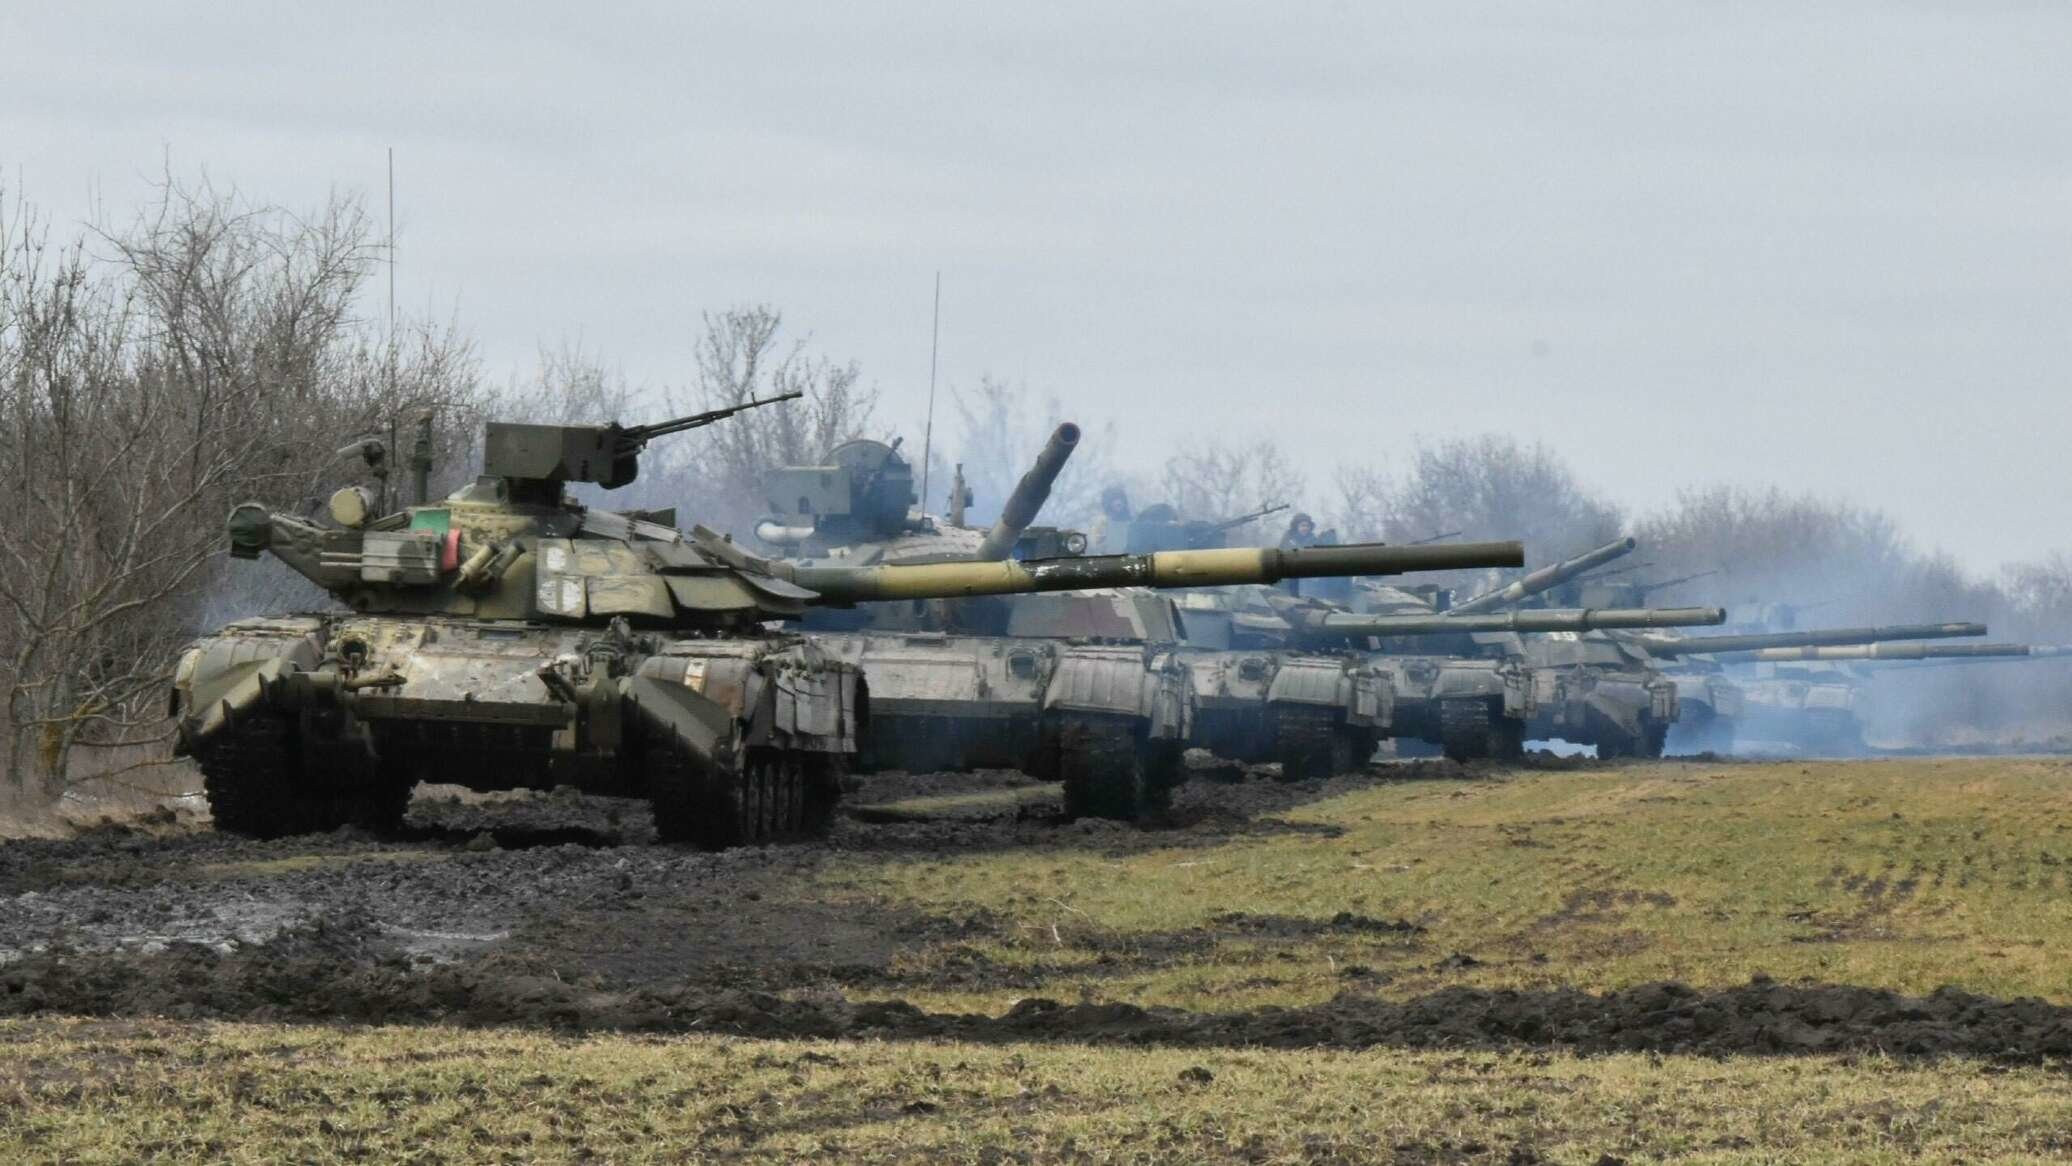 Askeri hareketlilik artıyor: Ukrayna'dan Rusya'ya nota